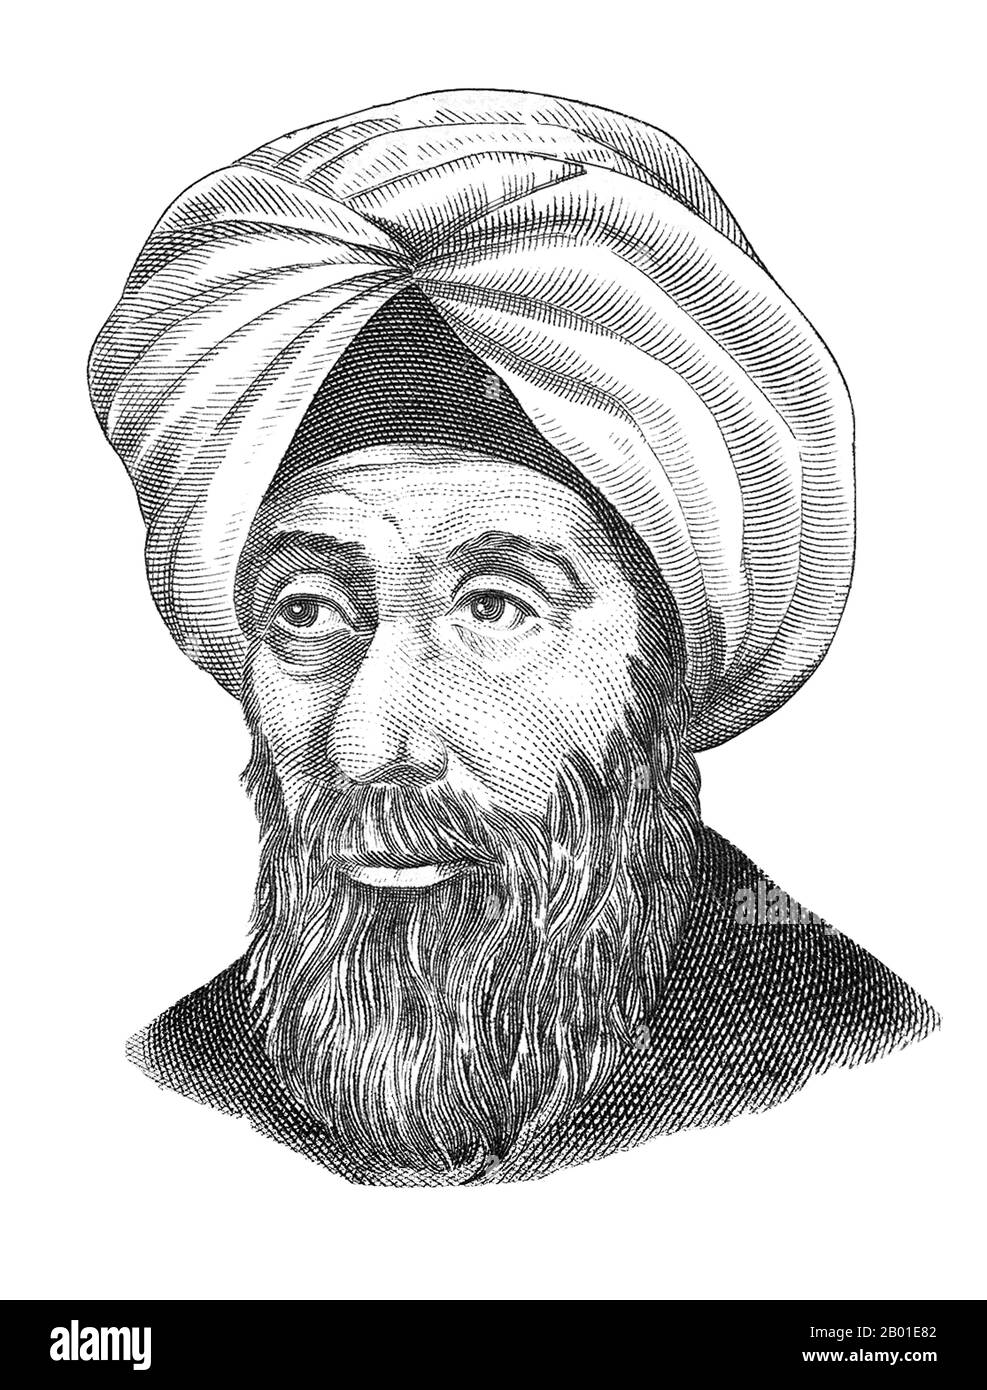 Iraq: Rappresentazione postuma del polymath Ibn al-Haytham, conosciuto nell'Europa medievale come Alhazen o Alhacen (965 - 1040). Di Sopianwar (CC BY-SA 4,0 licenza). Abū ʿAlī al-Ḥasan ibn al-Ḥasan ibn al-Haytham (Latinizzato: Alhacen o Alhazen) è stato uno scienziato e polymath musulmano, persiano o arabo. Viene spesso chiamato Ibn al-Haytham, e talvolta anche al-Basri, dopo la sua nascita nella città di Bassora. Alhazen ha dato un contributo significativo ai principi dell'ottica, alla fisica, all'astronomia, alla matematica, all'oftalmologia, alla filosofia e al metodo scientifico. Foto Stock